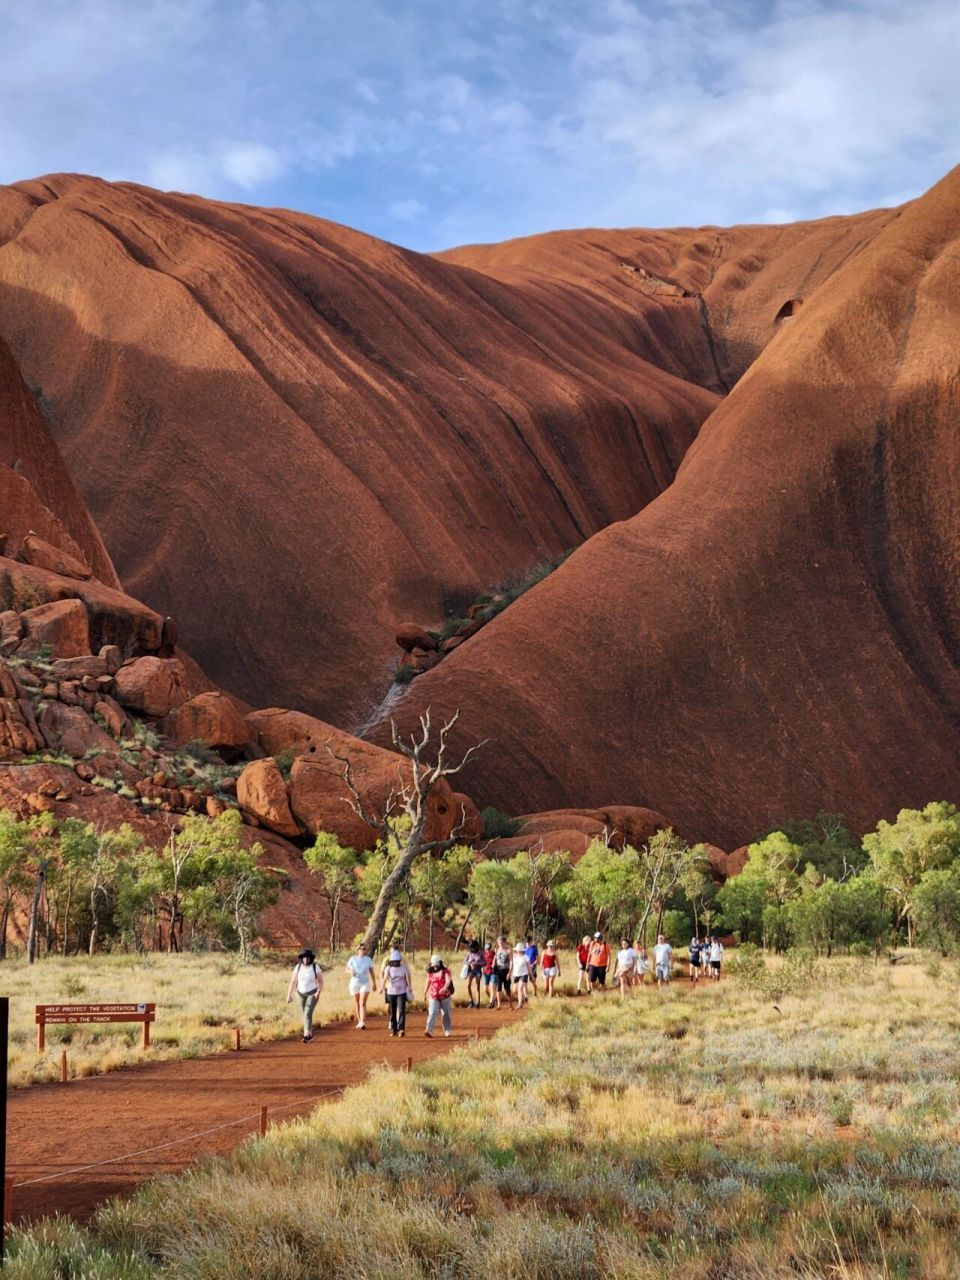 世界上最大的石头 澳洲之心 艾尔斯巨石是世界上最大的一块单体岩石